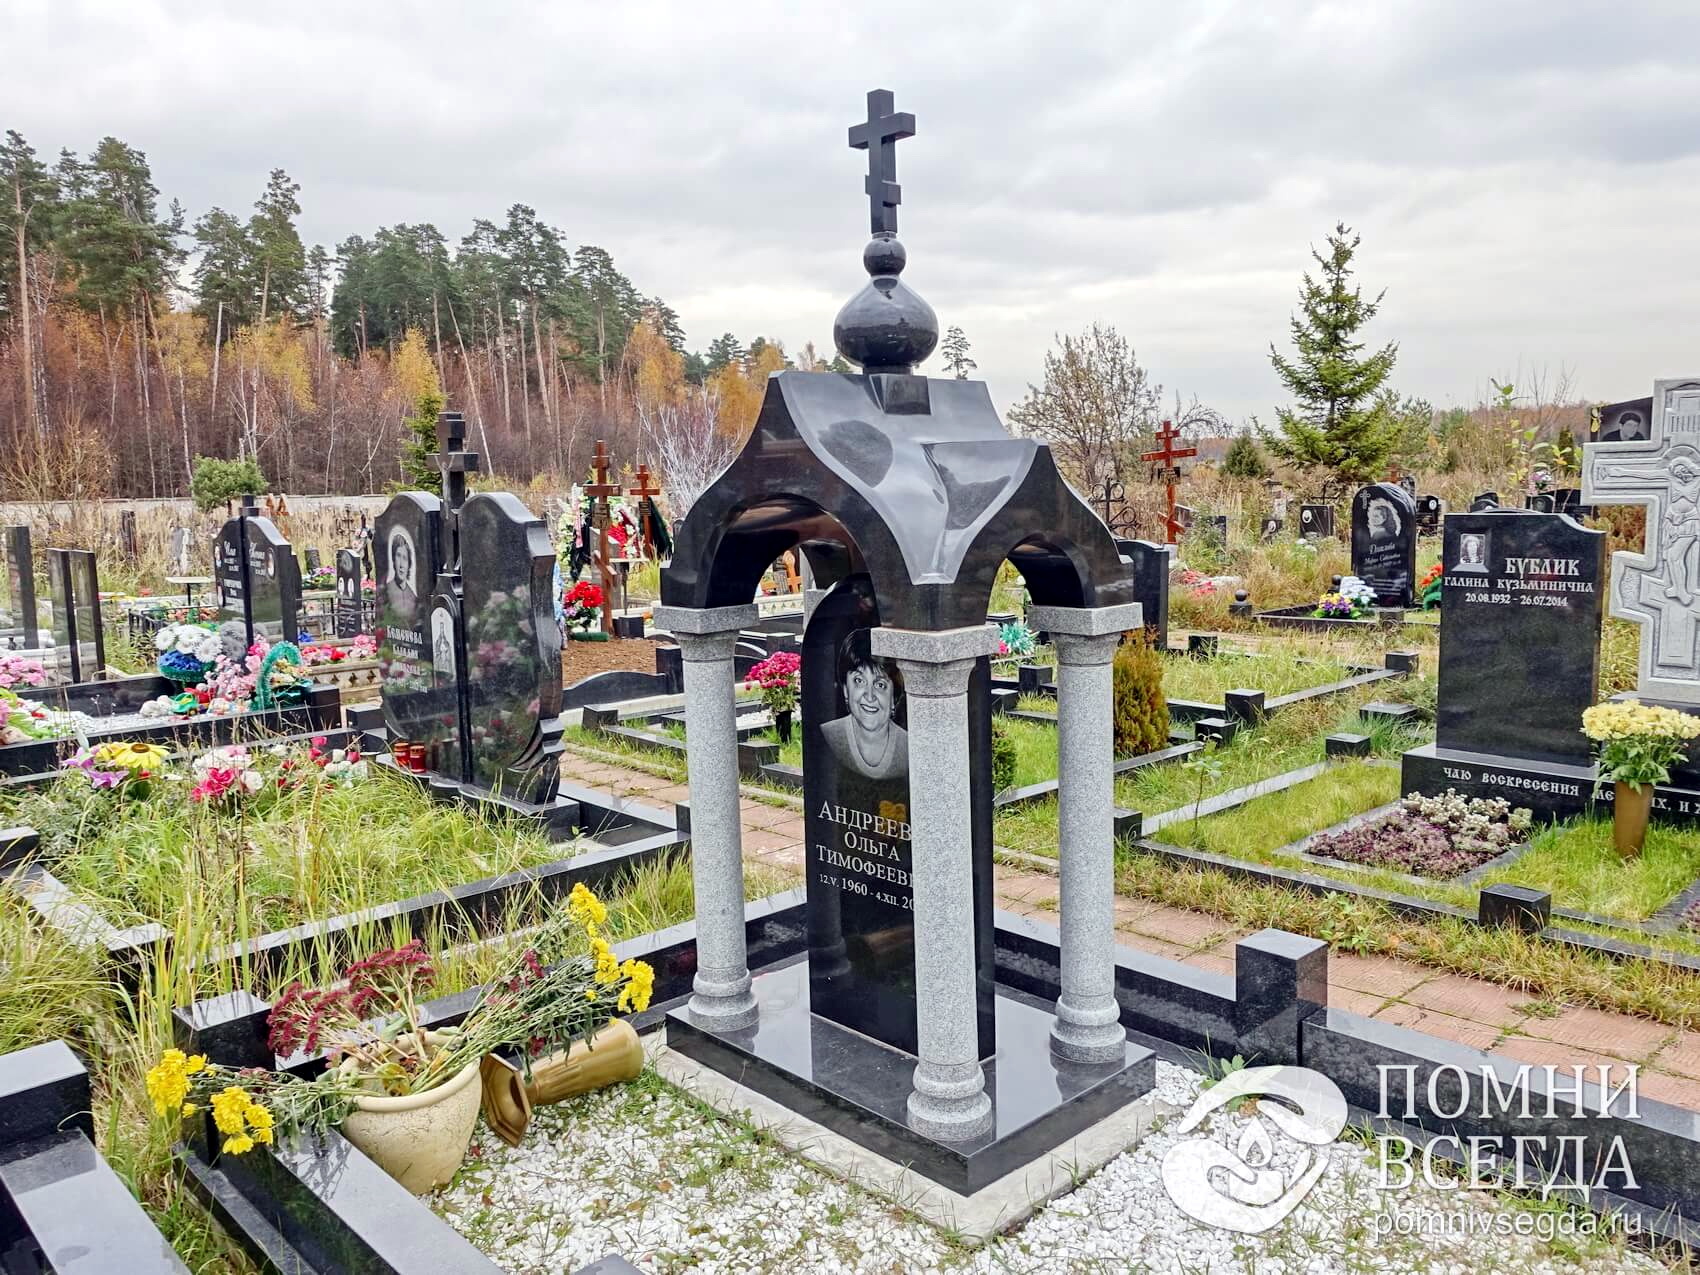 Крытое надгробье в православном стиле